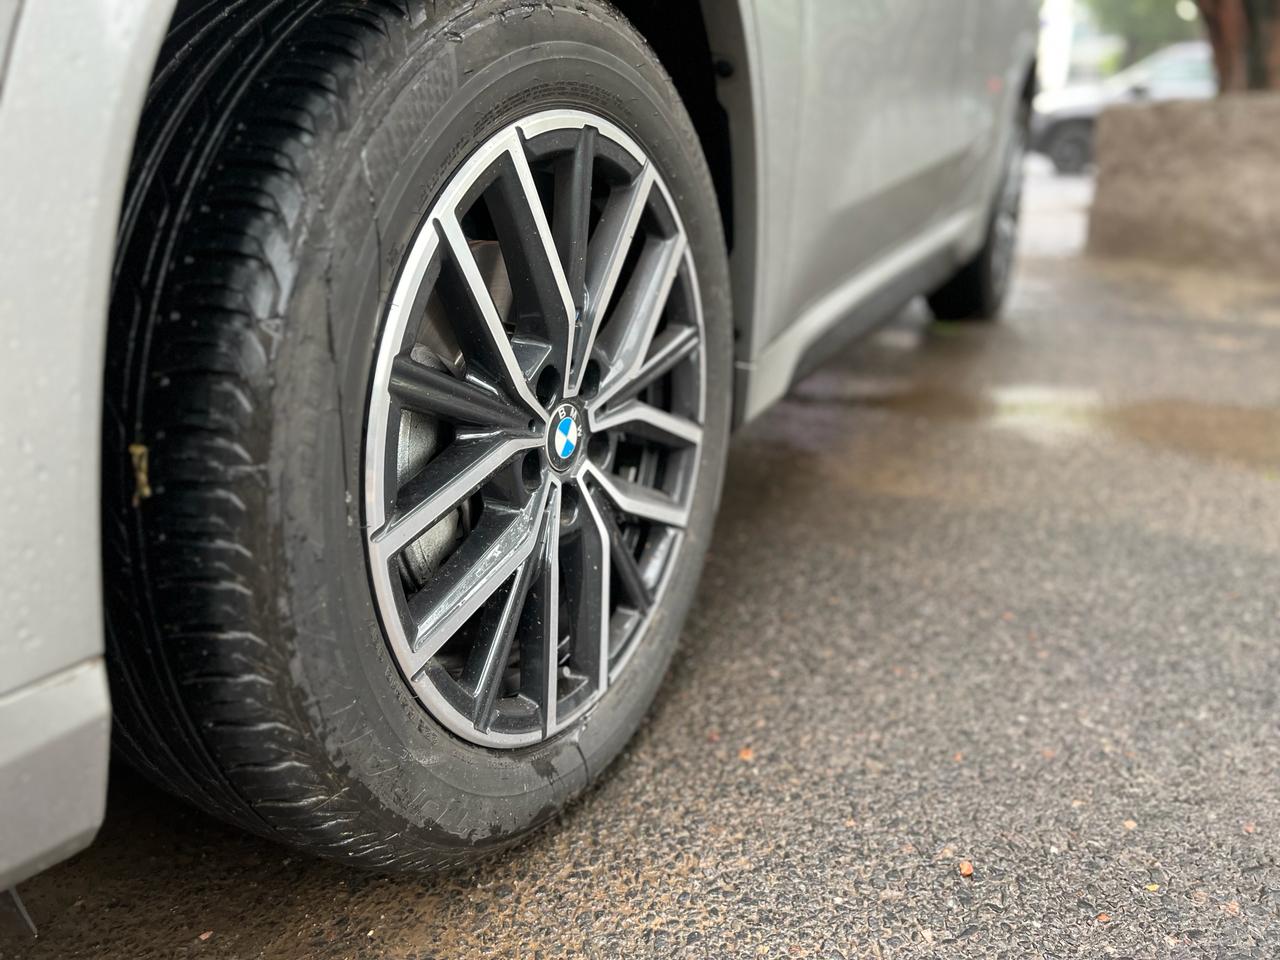 BMW X1 Review: देखिए बीएमडब्ल्यू एक्स1 का लॉन्ग टर्म रिव्यू, जानिए क्यों है यह सबसे पॉपुलर लग्जरी एसयूवी?